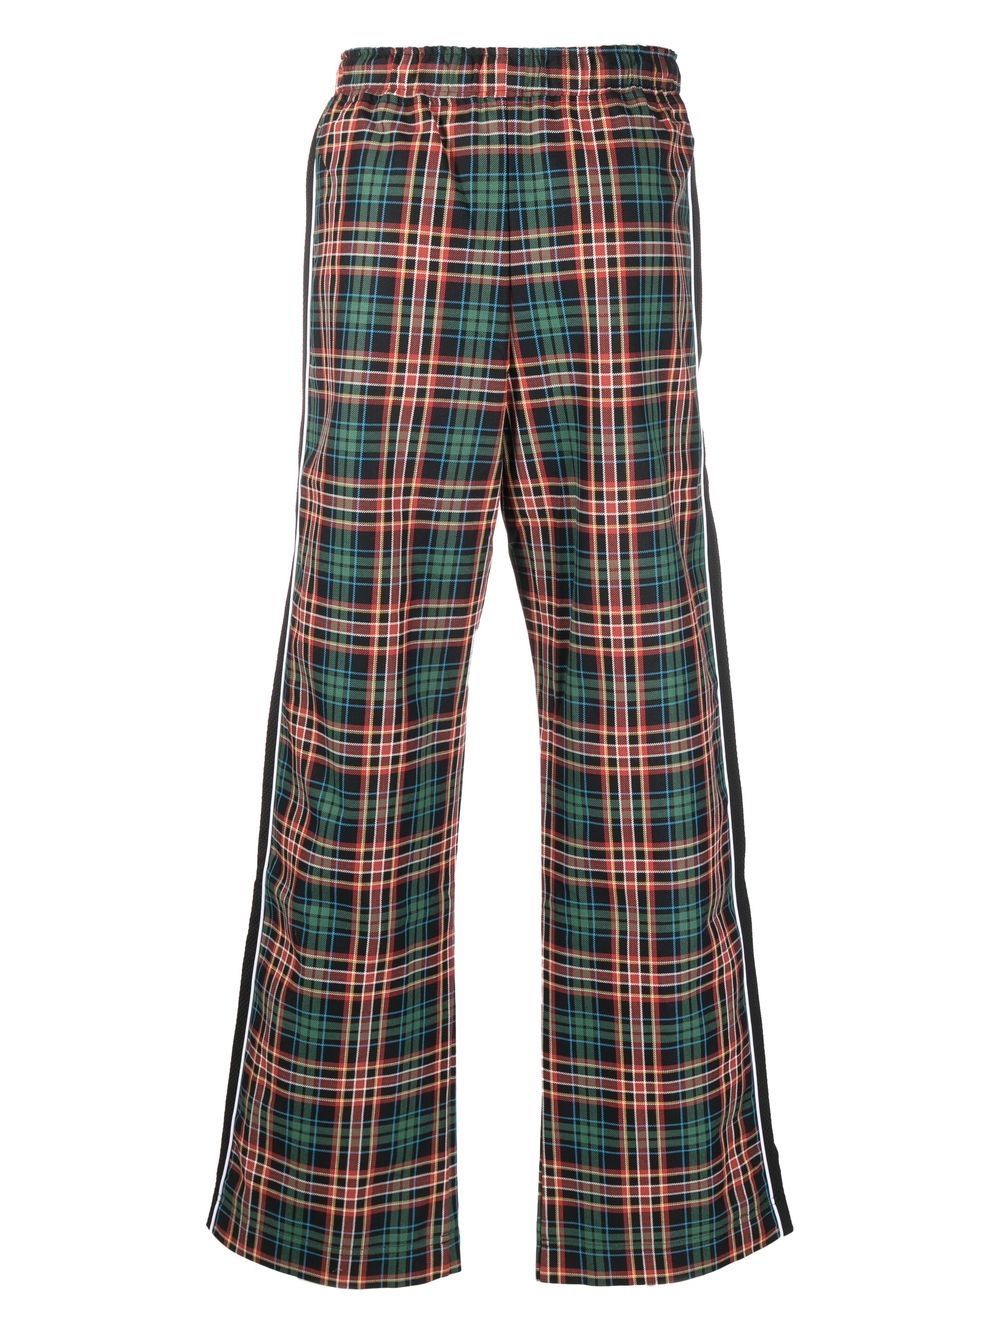 Buy Maroon Trousers  Pants for Women by SMARTY PANTS Online  Ajiocom